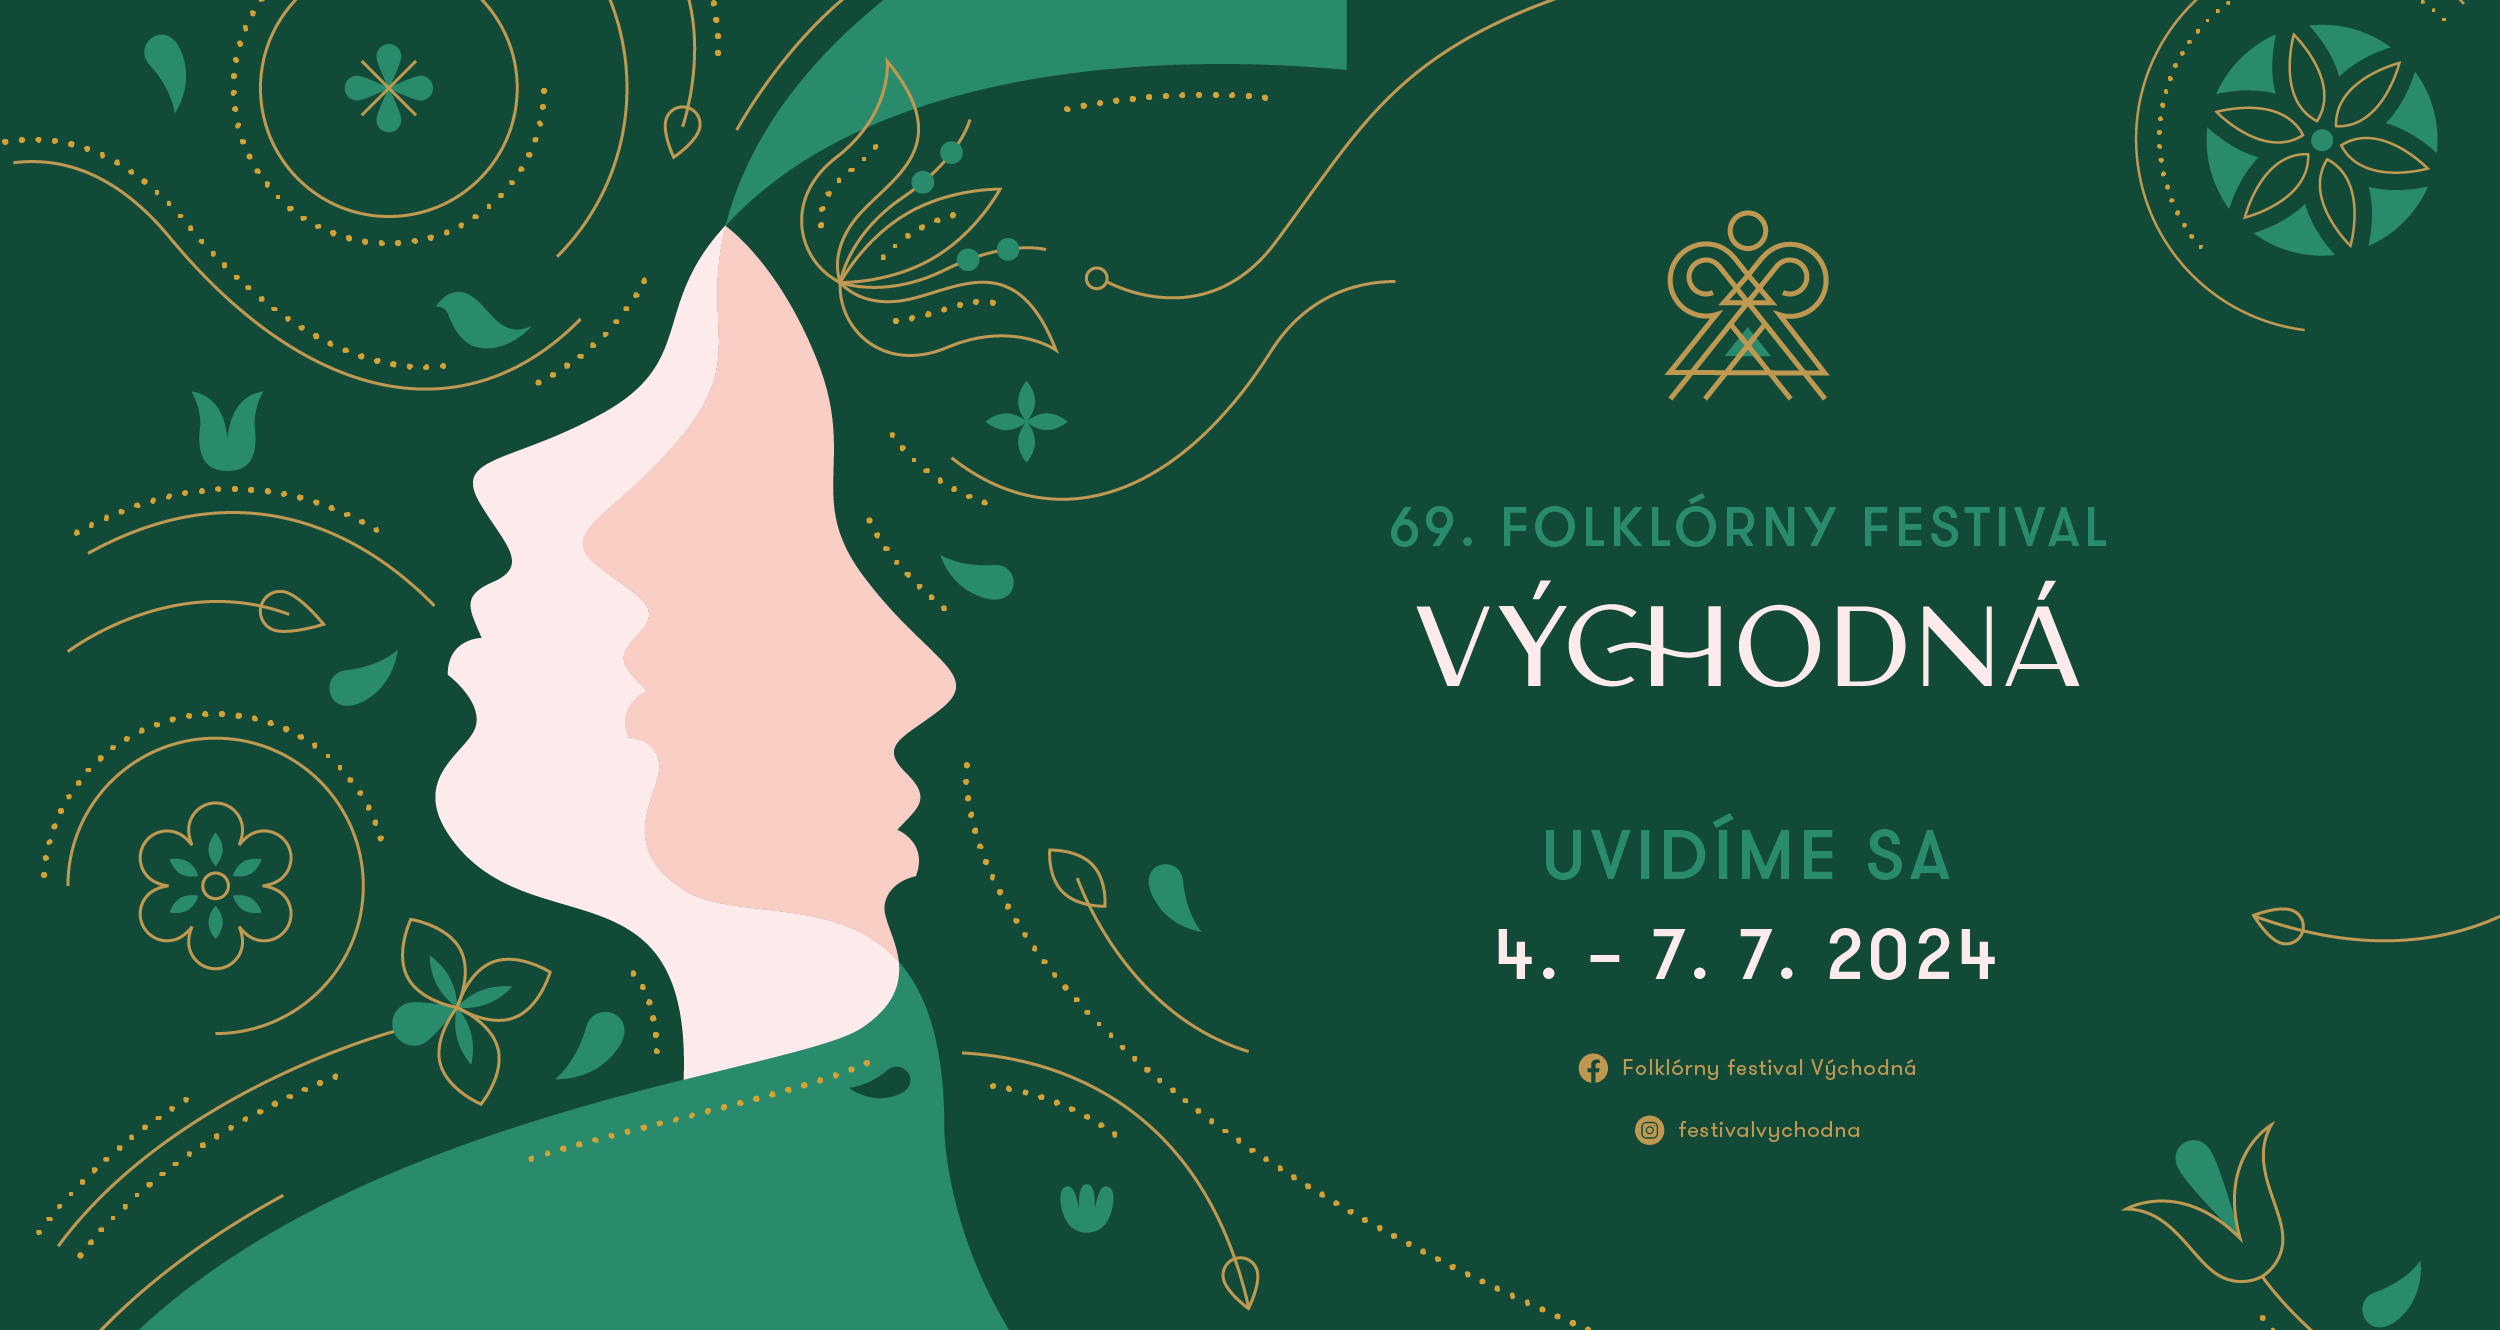 Folklórny festival Východná, 4. 7. - 7. 7. 2024